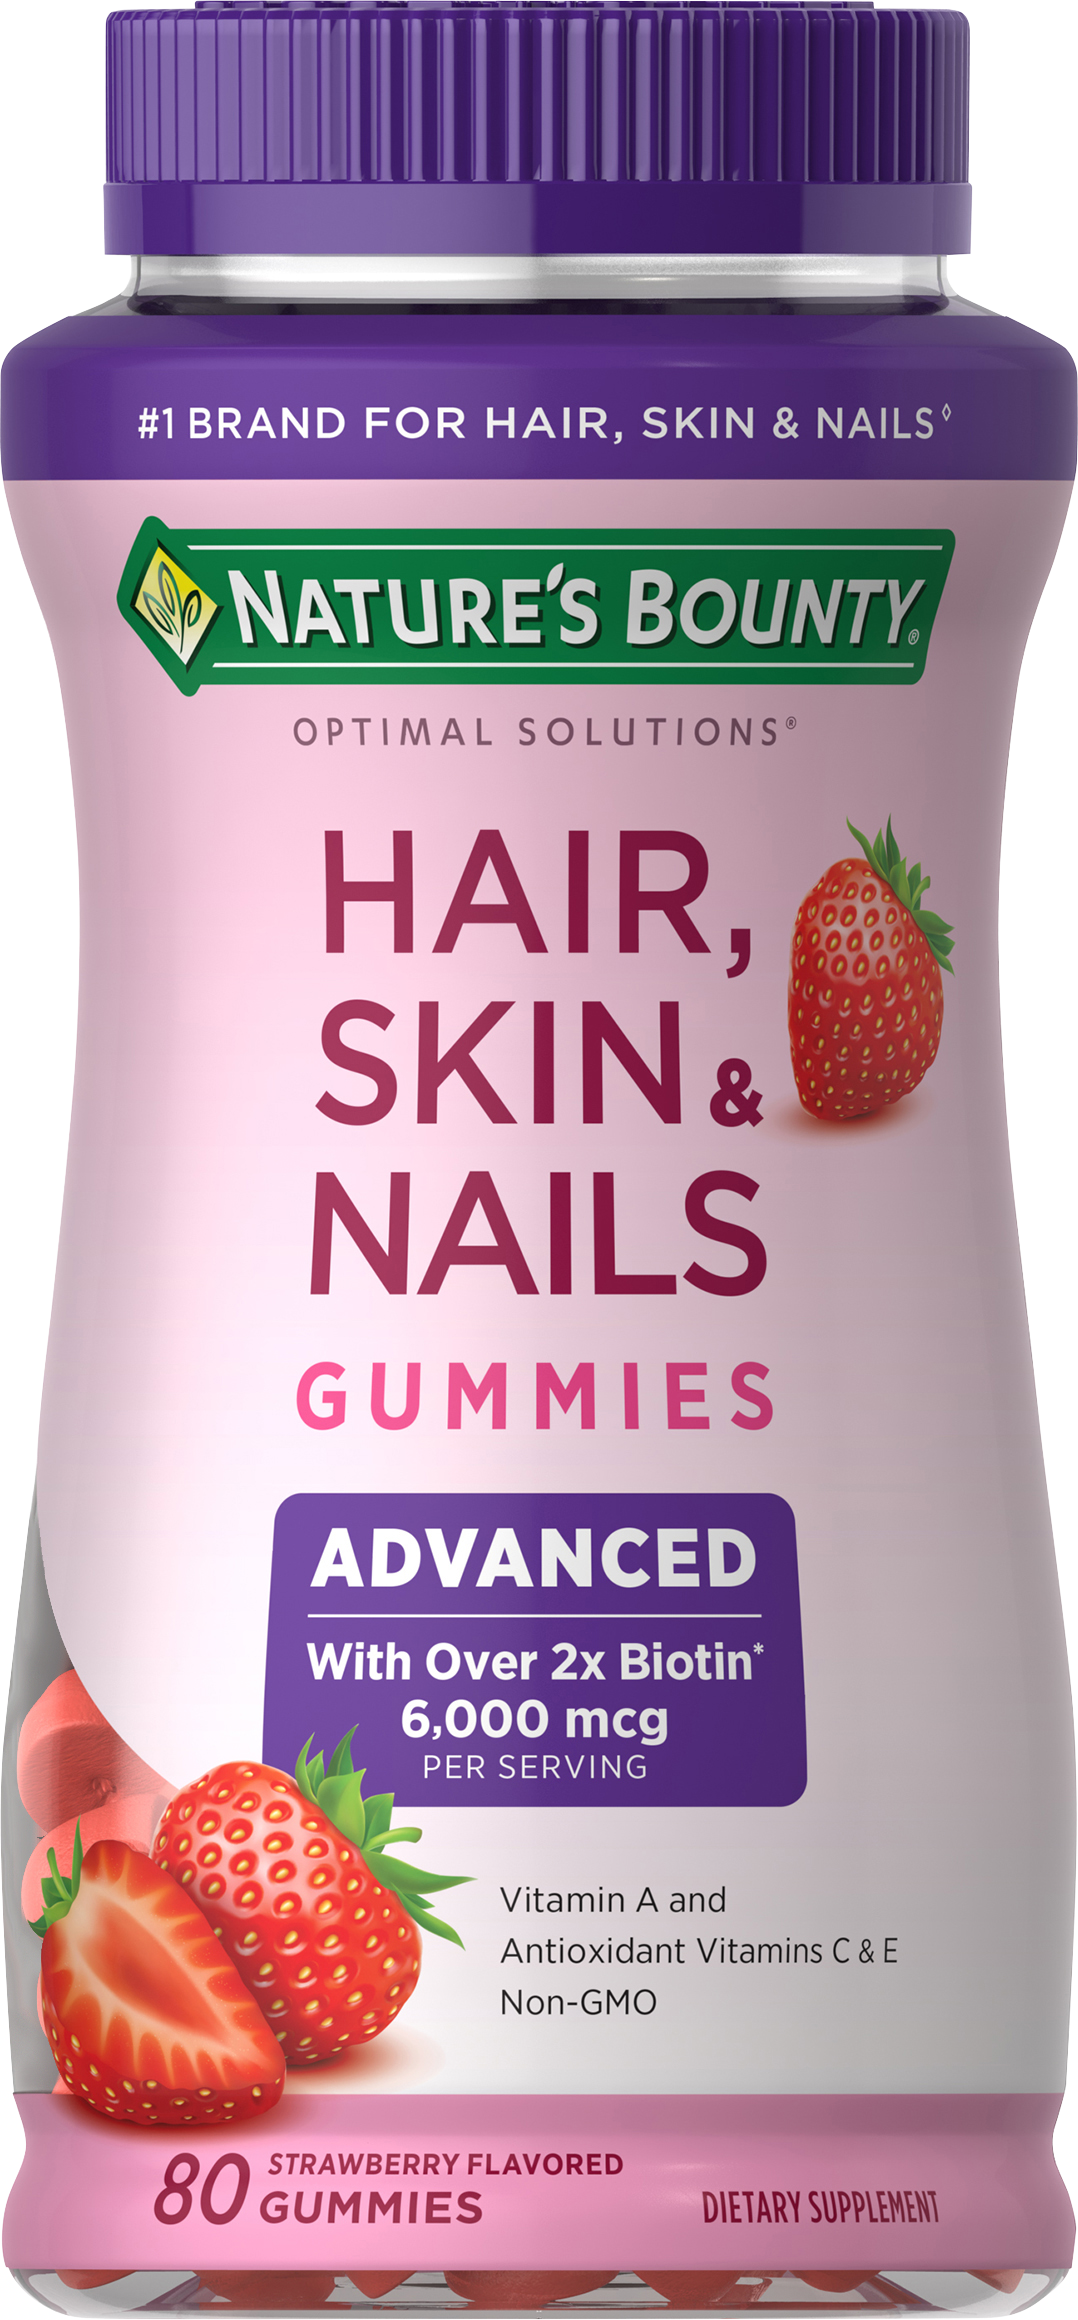 Nature's Bounty® Advanced Hair, Skin & Nails Gummies